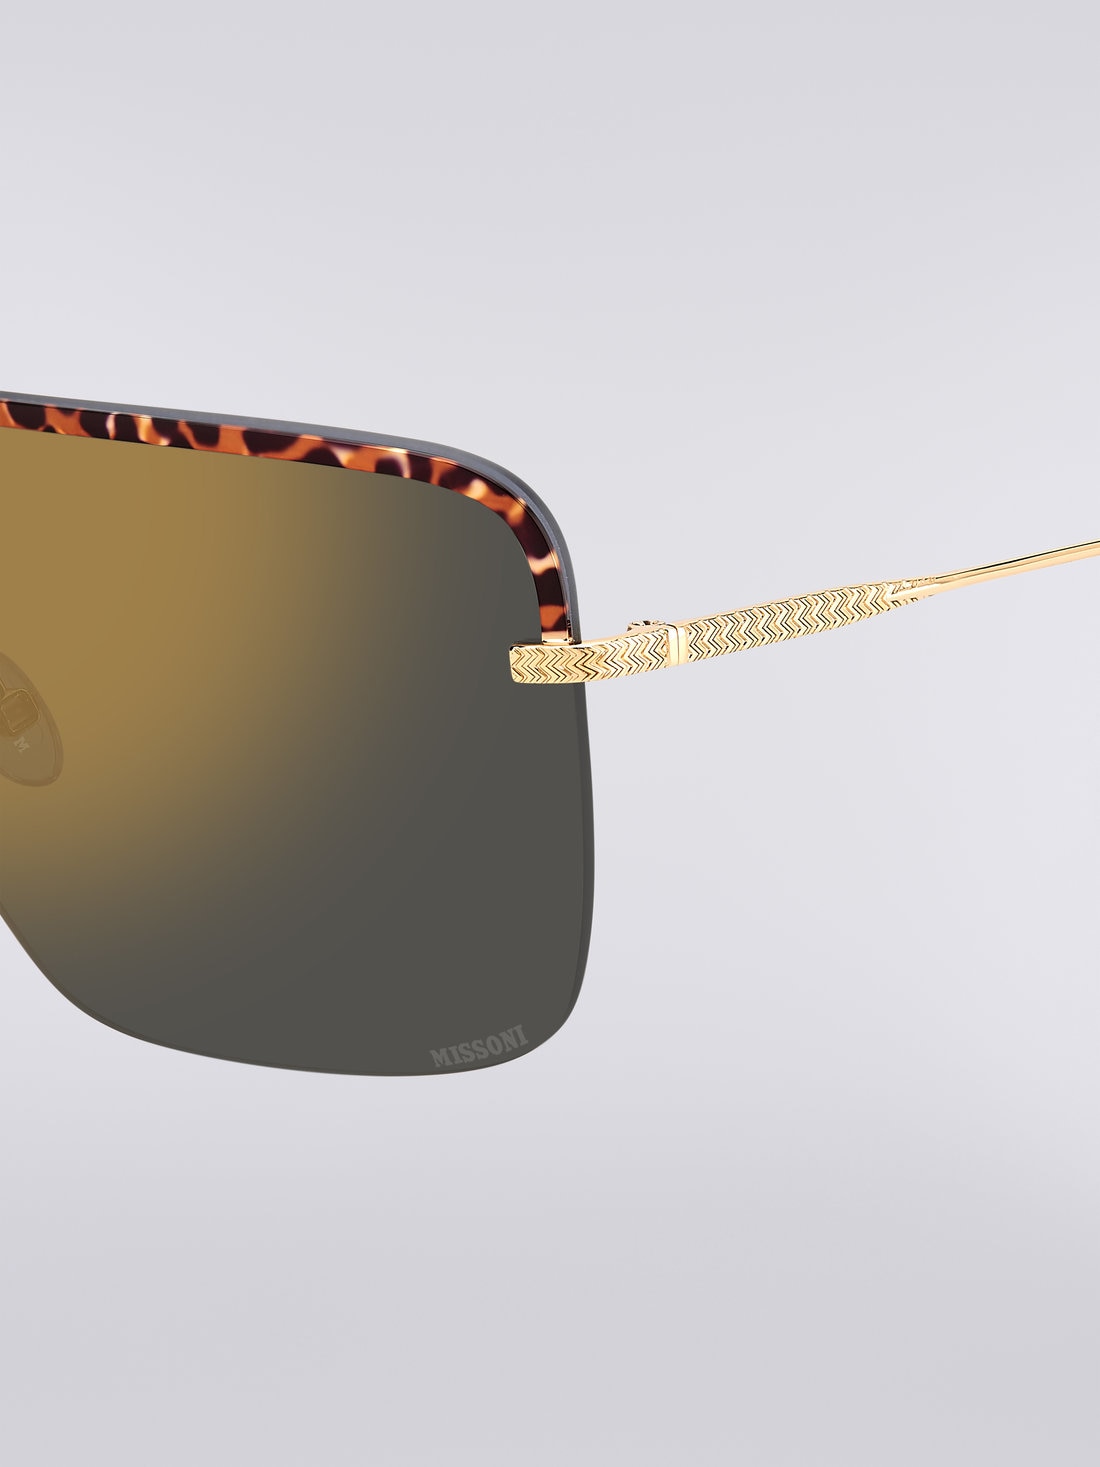 Missoni Seasonal Metal Sunglasses, Multicoloured  - 8051575840210 - 3